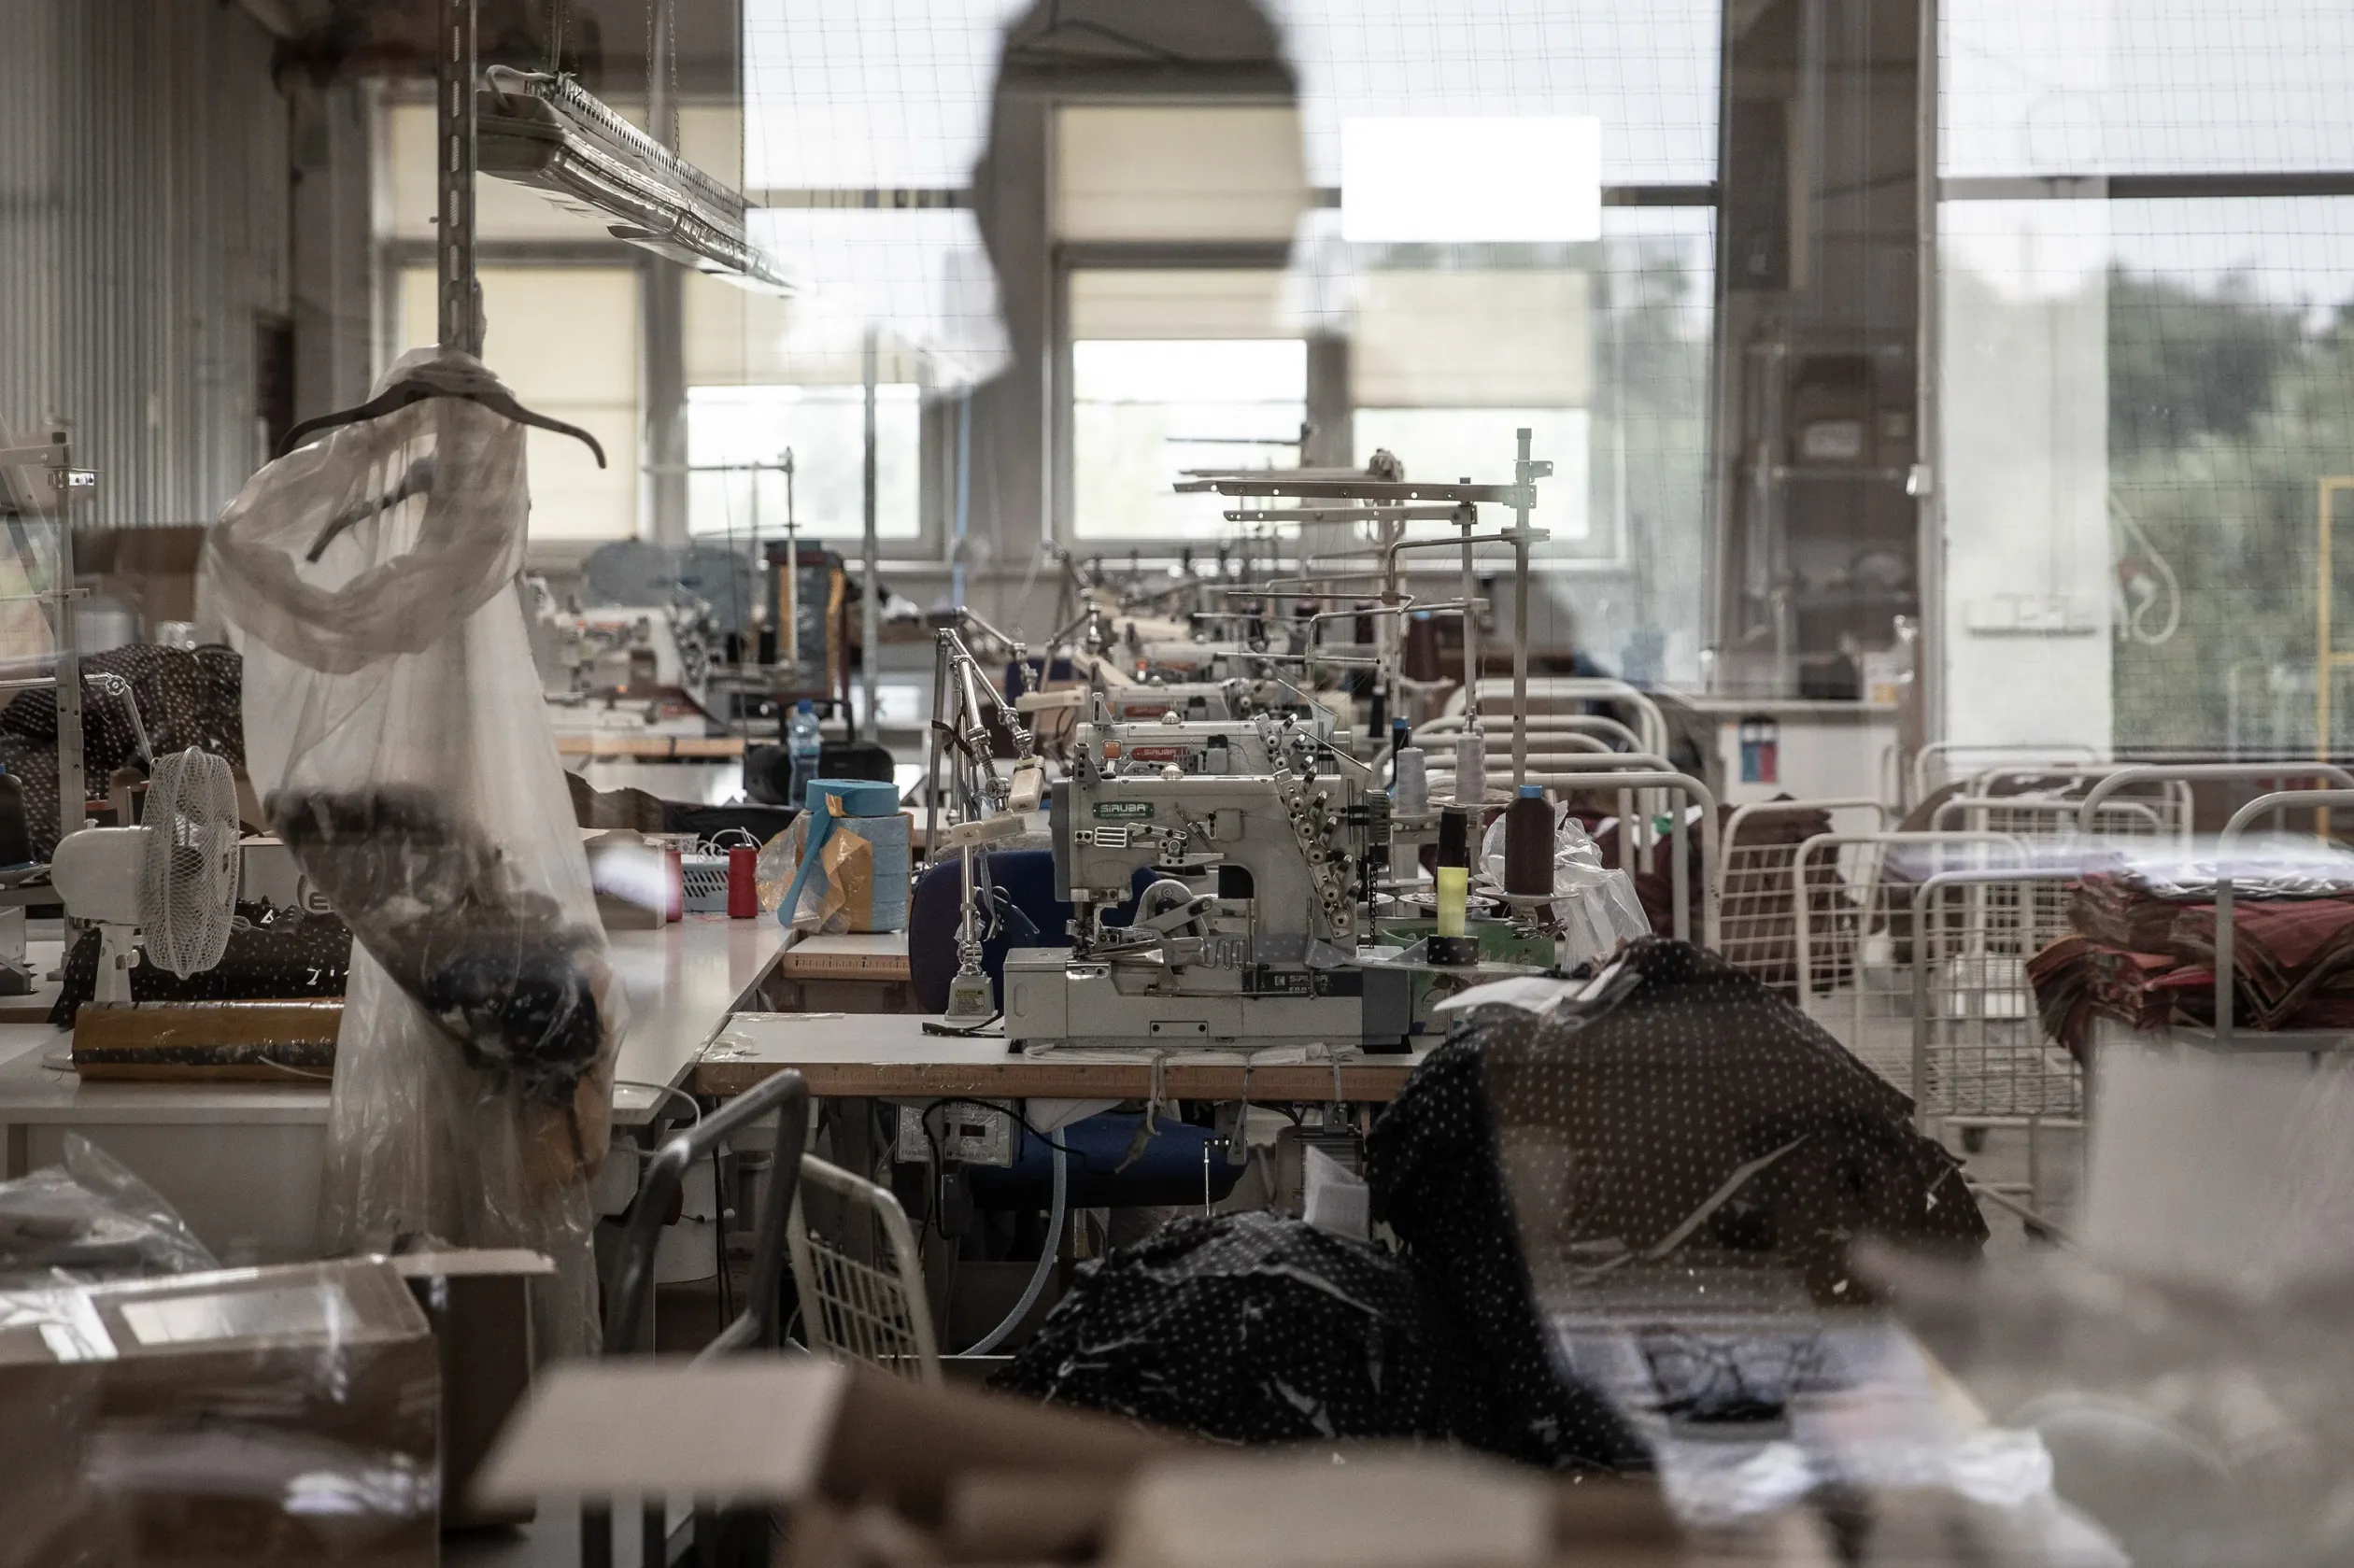 Sewing machines at a sewing company in Pabianice, near Łódź – Photo by Jakub Włodek / Gazeta Wyborcza / Telex